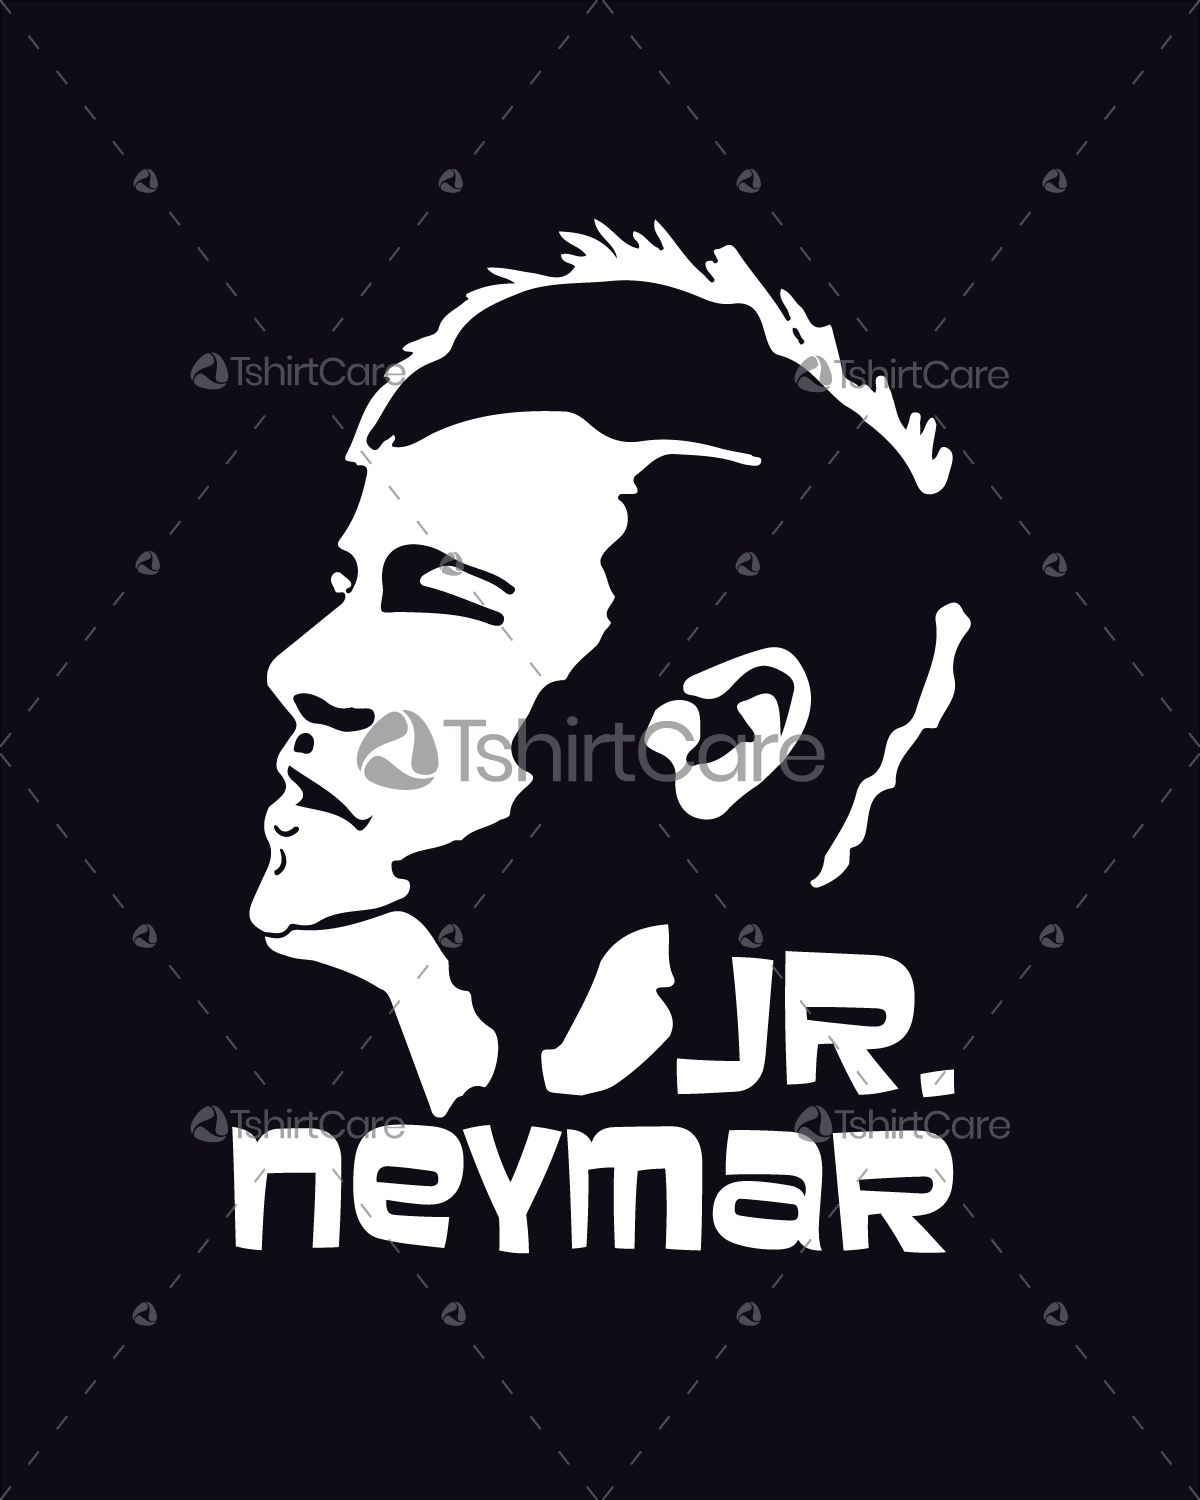 Neymar Logo - Jr neymar face T shirt Design Brazil World Cup Football player Tee & Jersey  Design for Men, Women & Kid - TshirtCare